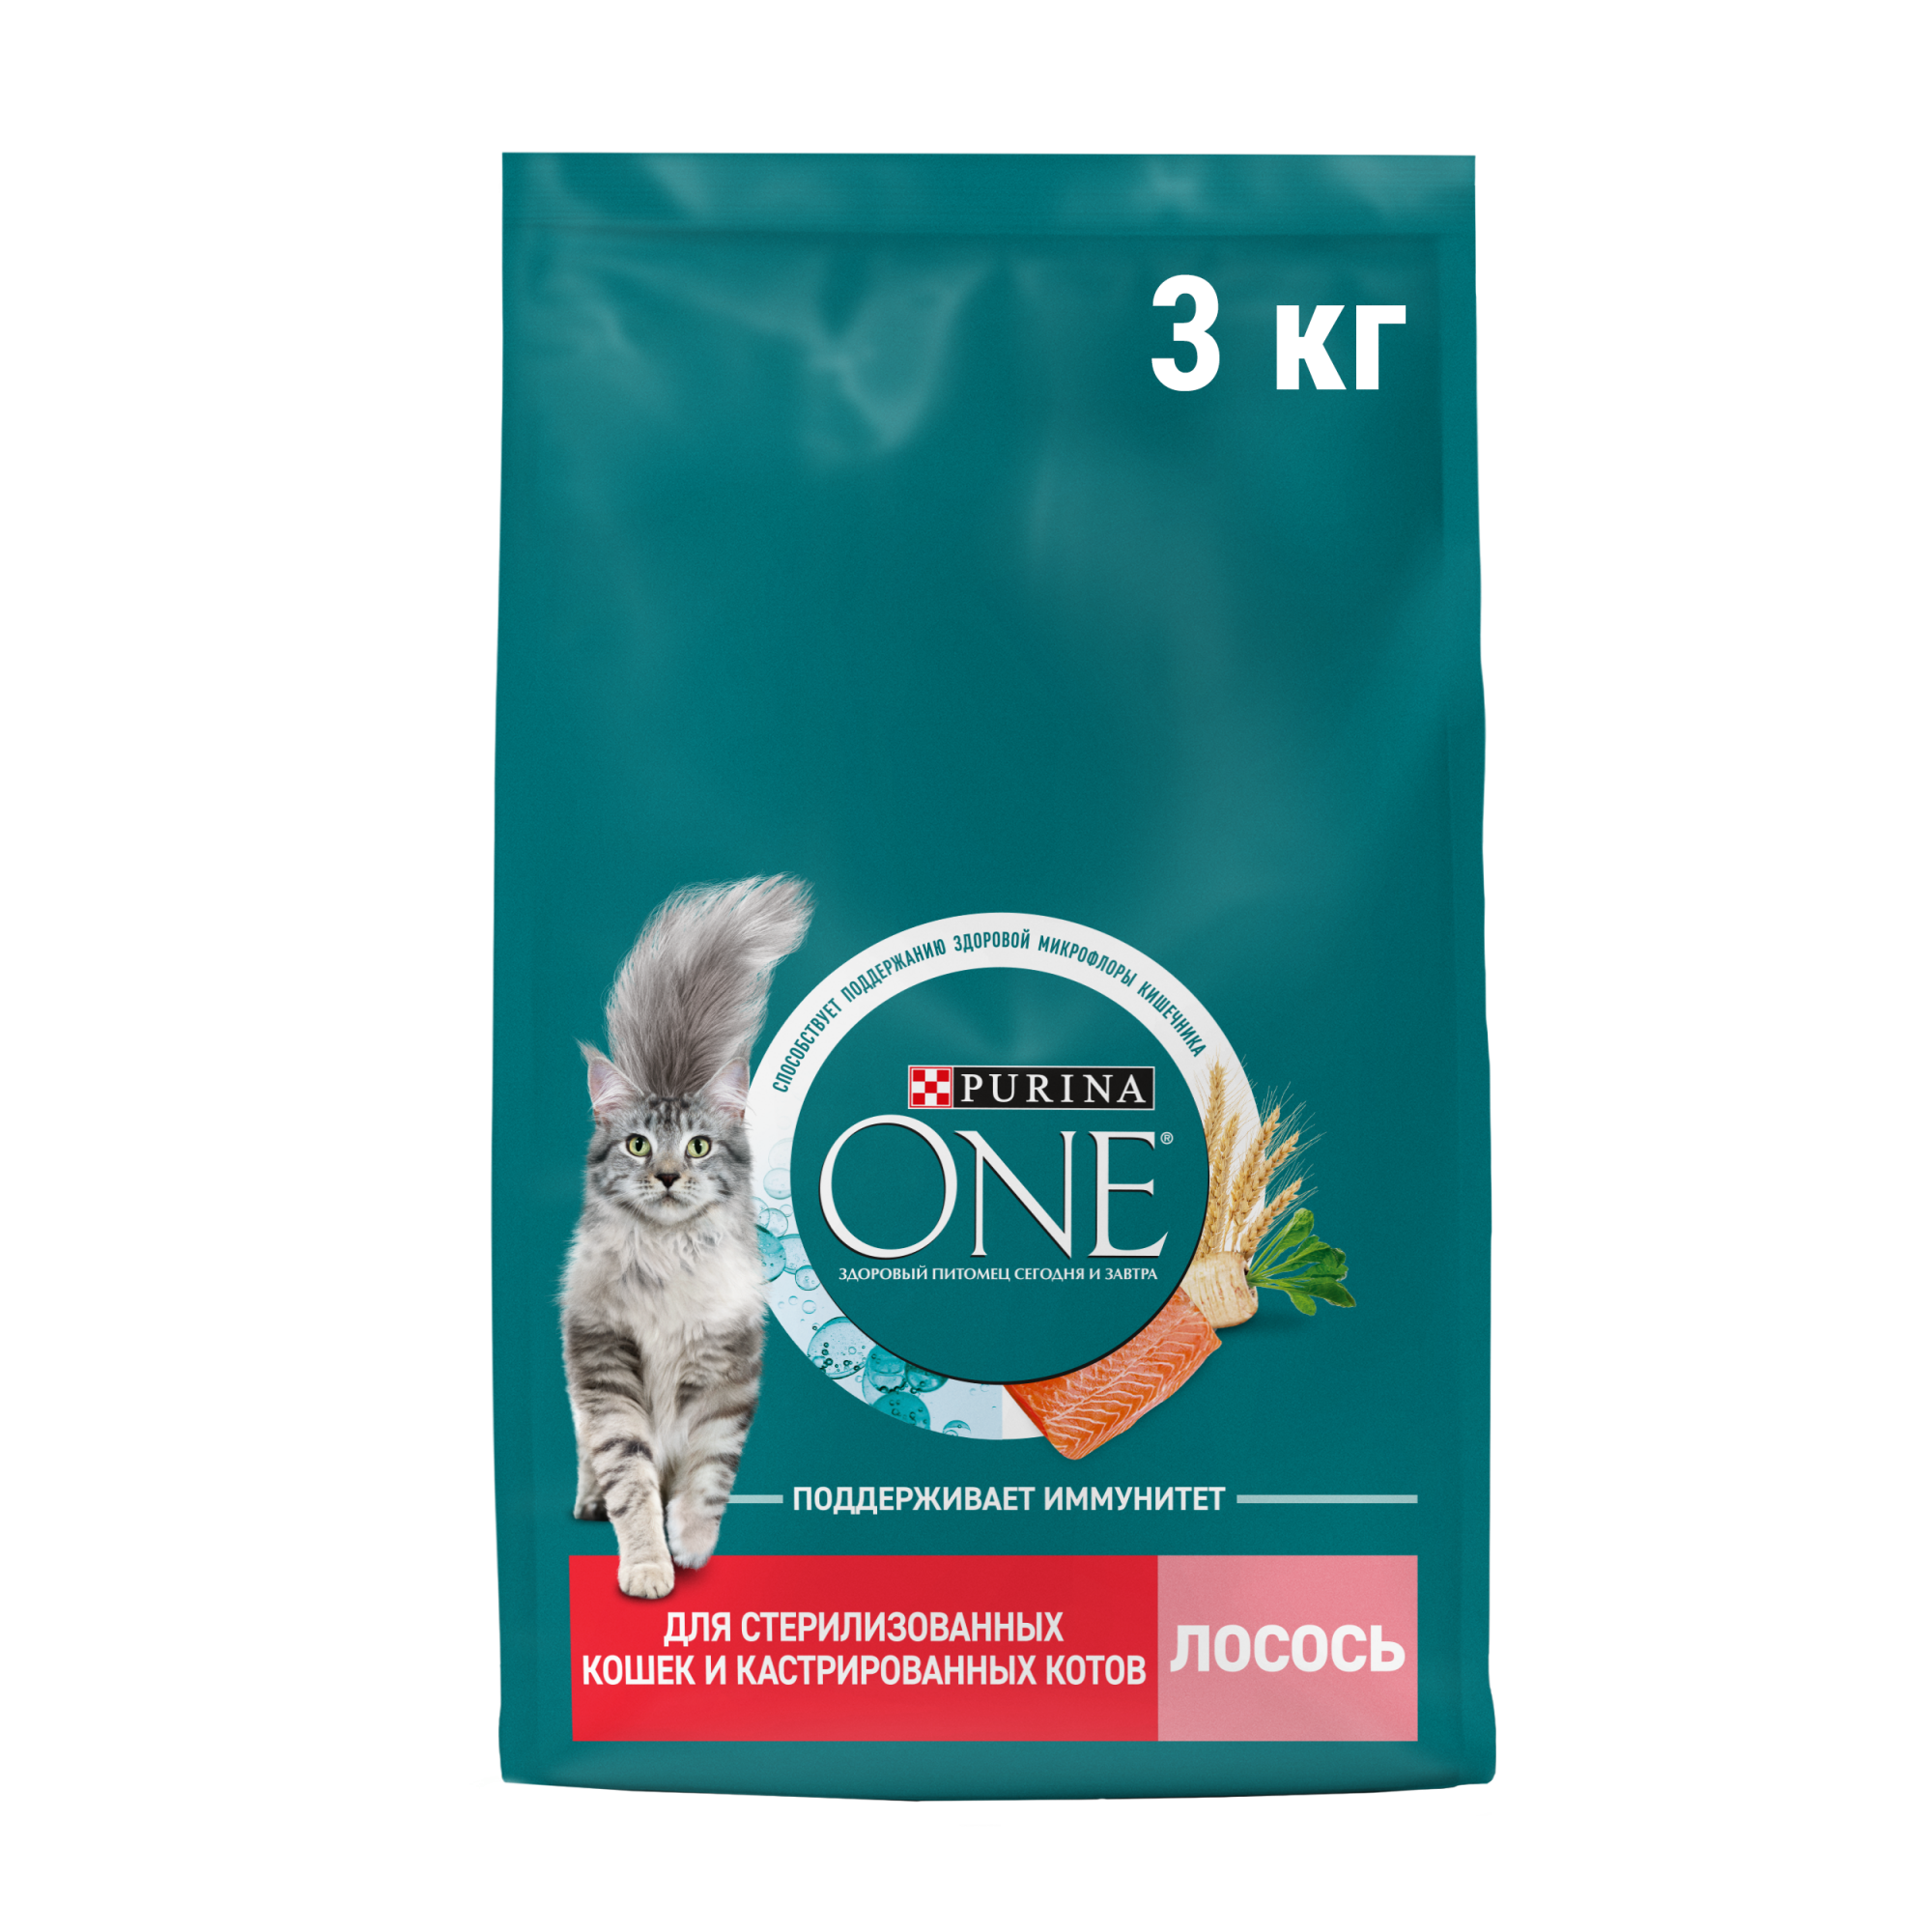 Сухой корм для кошек Purina ONE, для стерилизованных и кастрированных, с лососем, 3 кг - купить в АШАН - СберМаркет, цена на Мегамаркет